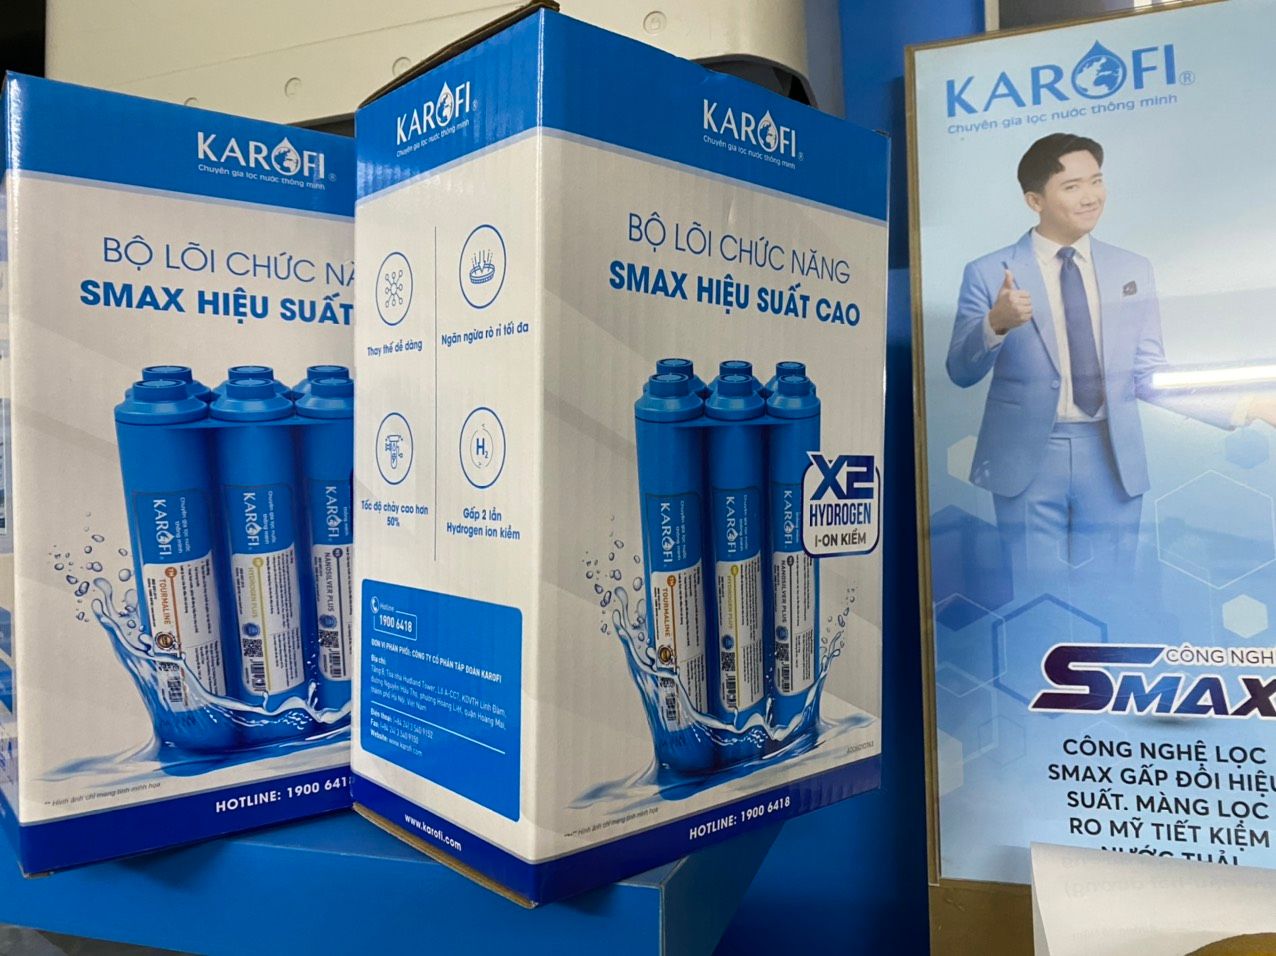  [CHÍNH HÃNG] Bộ lõi chức năng - lõi bù khoáng máy lọc nước Karofi 5678 smax hiệu suất cao hp 6.1 6.2 - thay thế cho tất cả máy tủ hoặc để gầm của Karofi Kangaroo và các hãng tương đương 